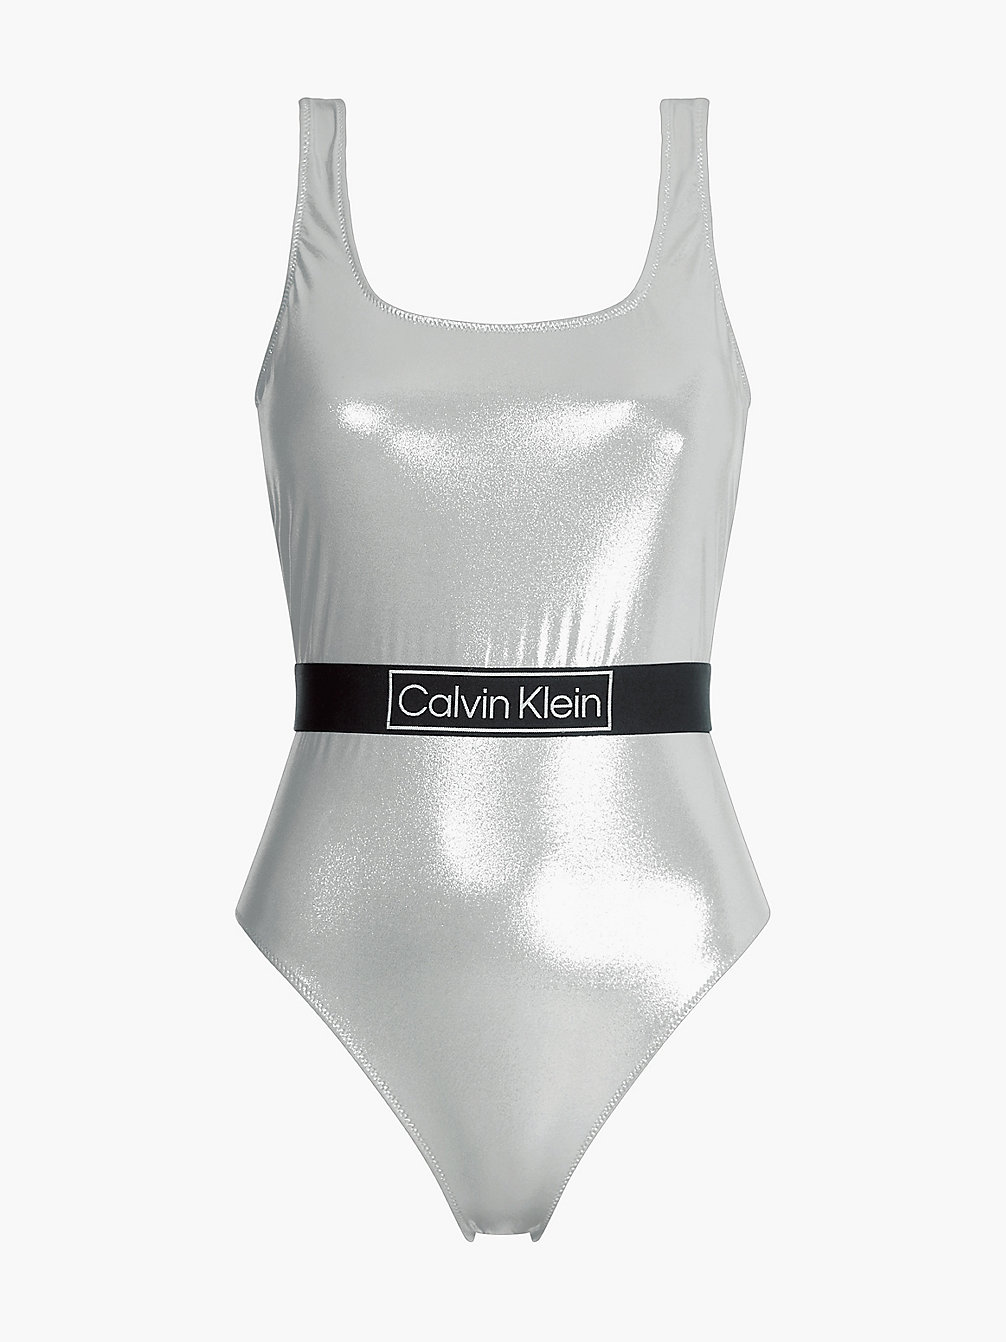 LIGHT CAST Badeanzug - Core Festive undefined Damen Calvin Klein